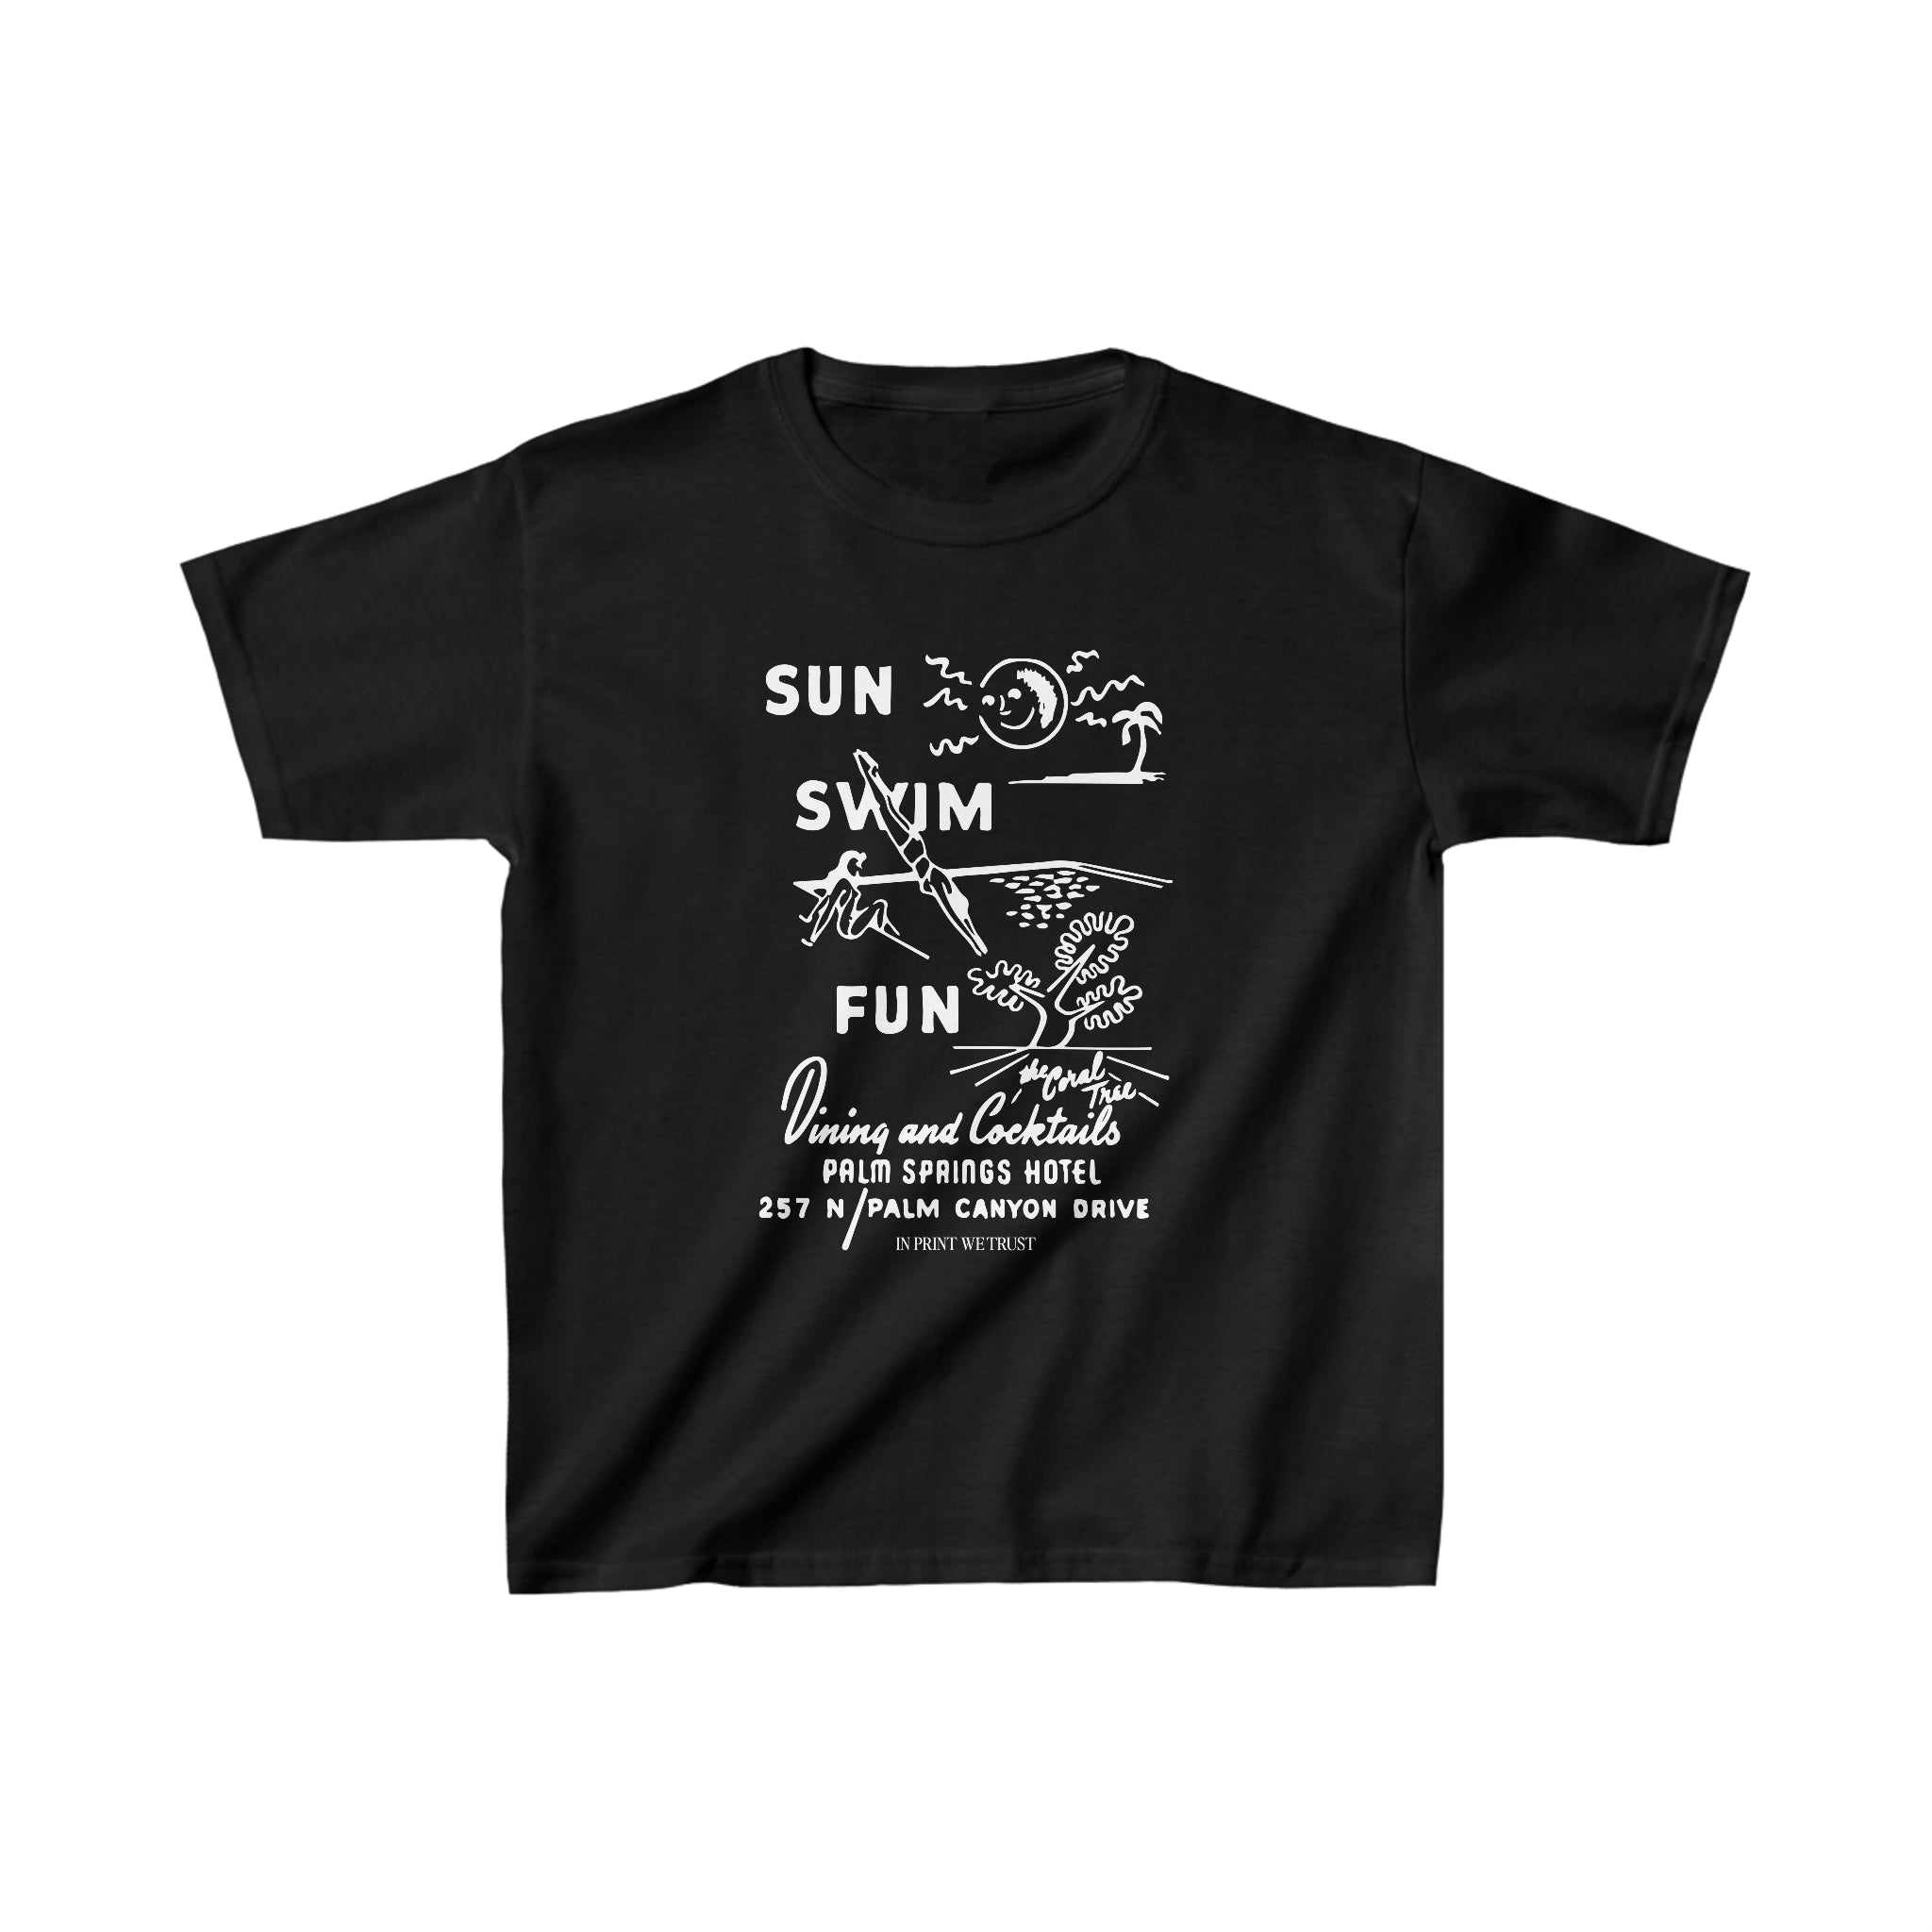 'Sun Swim Fun' baby tee - In Print We Trust